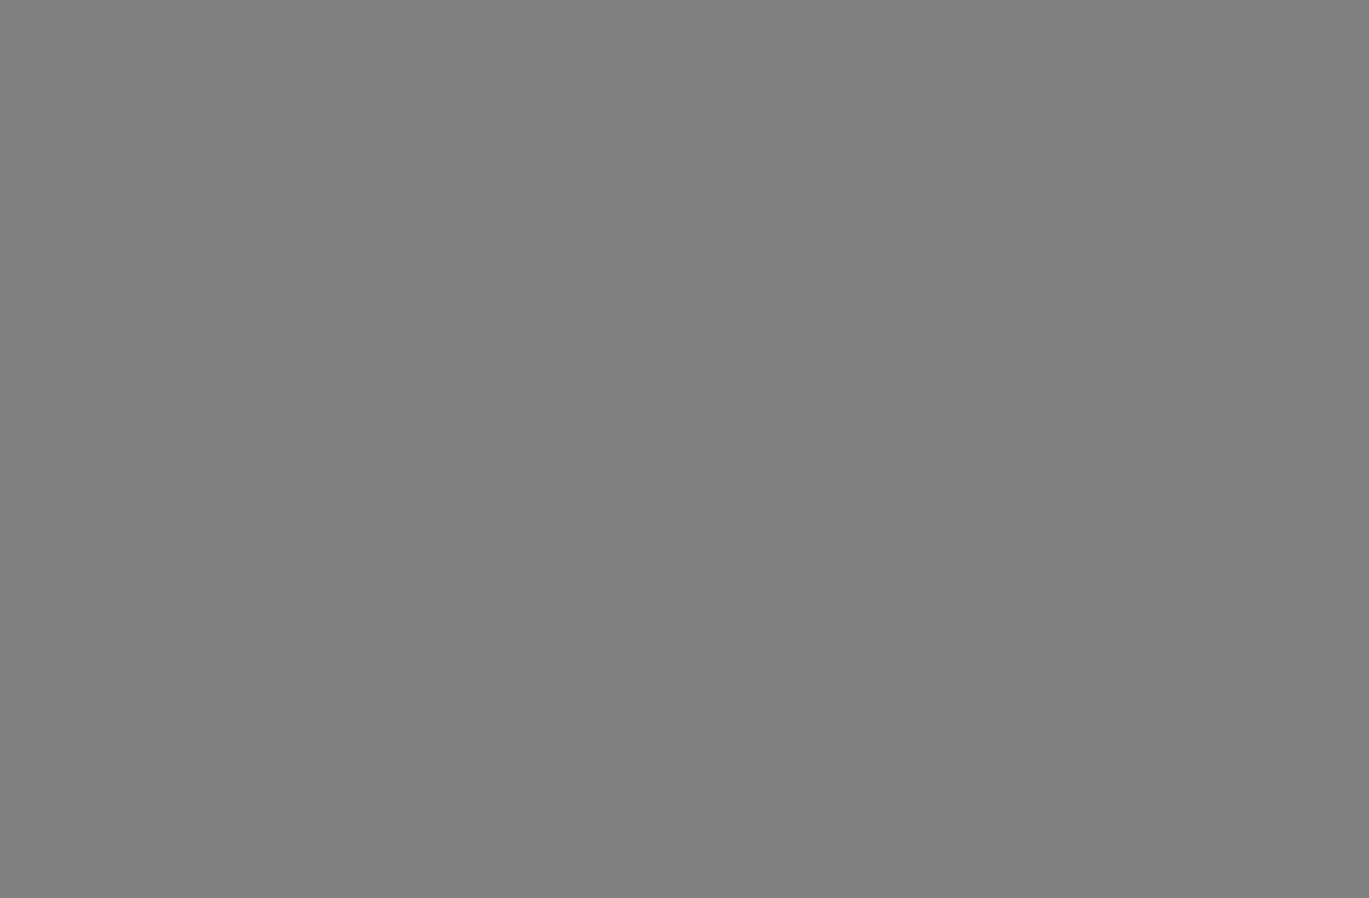 Особняк Зинаиды Морозовой. Архитектор Фёдор Шехтель. 1894-1898. Фотография: starkult.ru